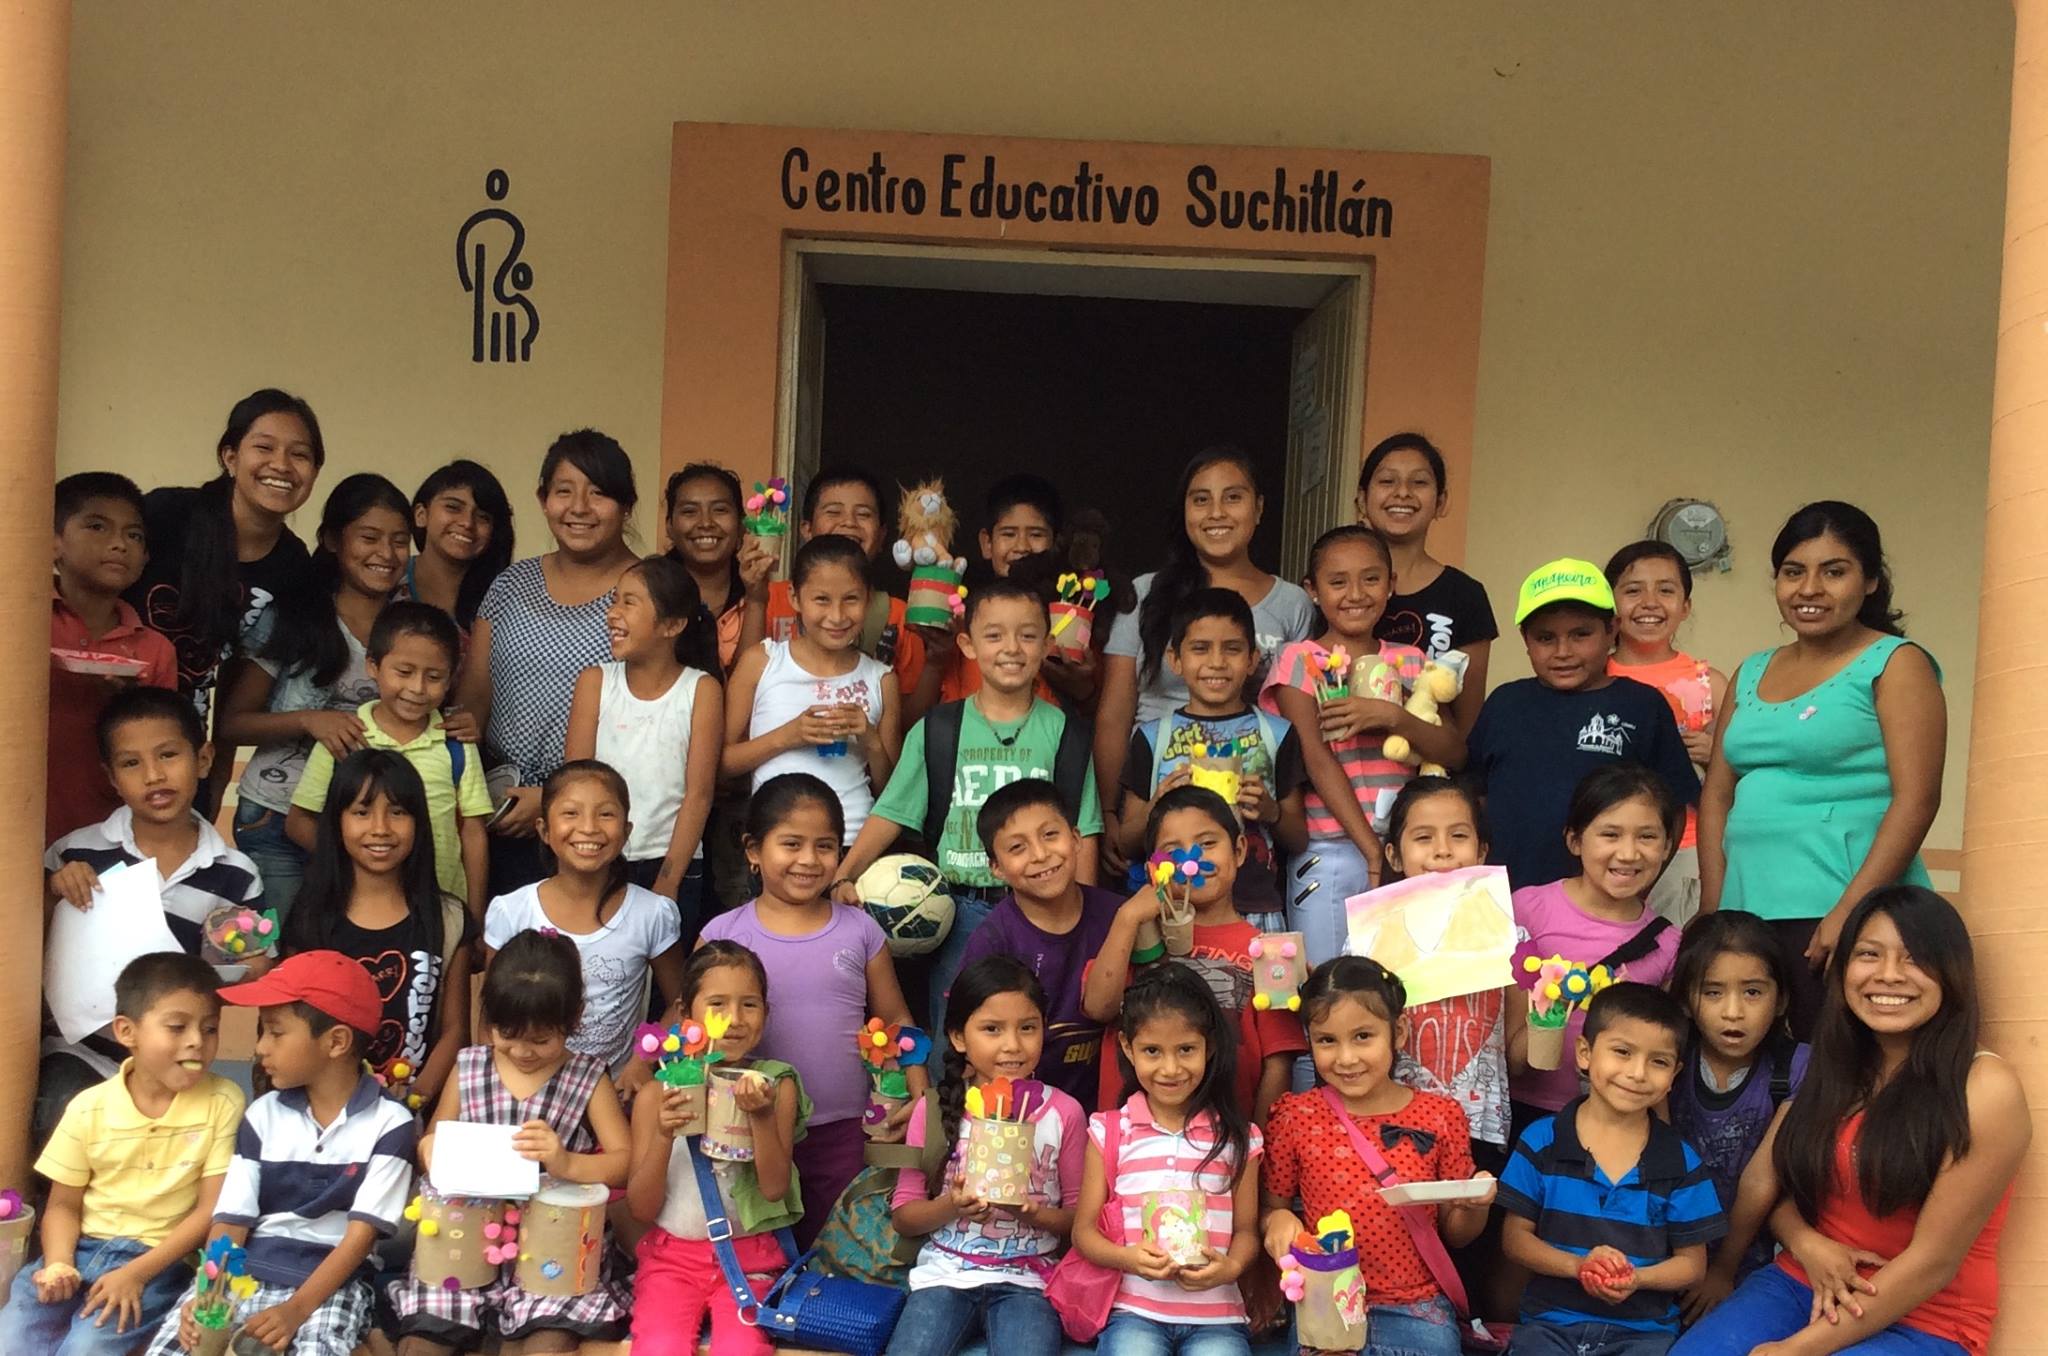 Centro Educativo Suchitlan